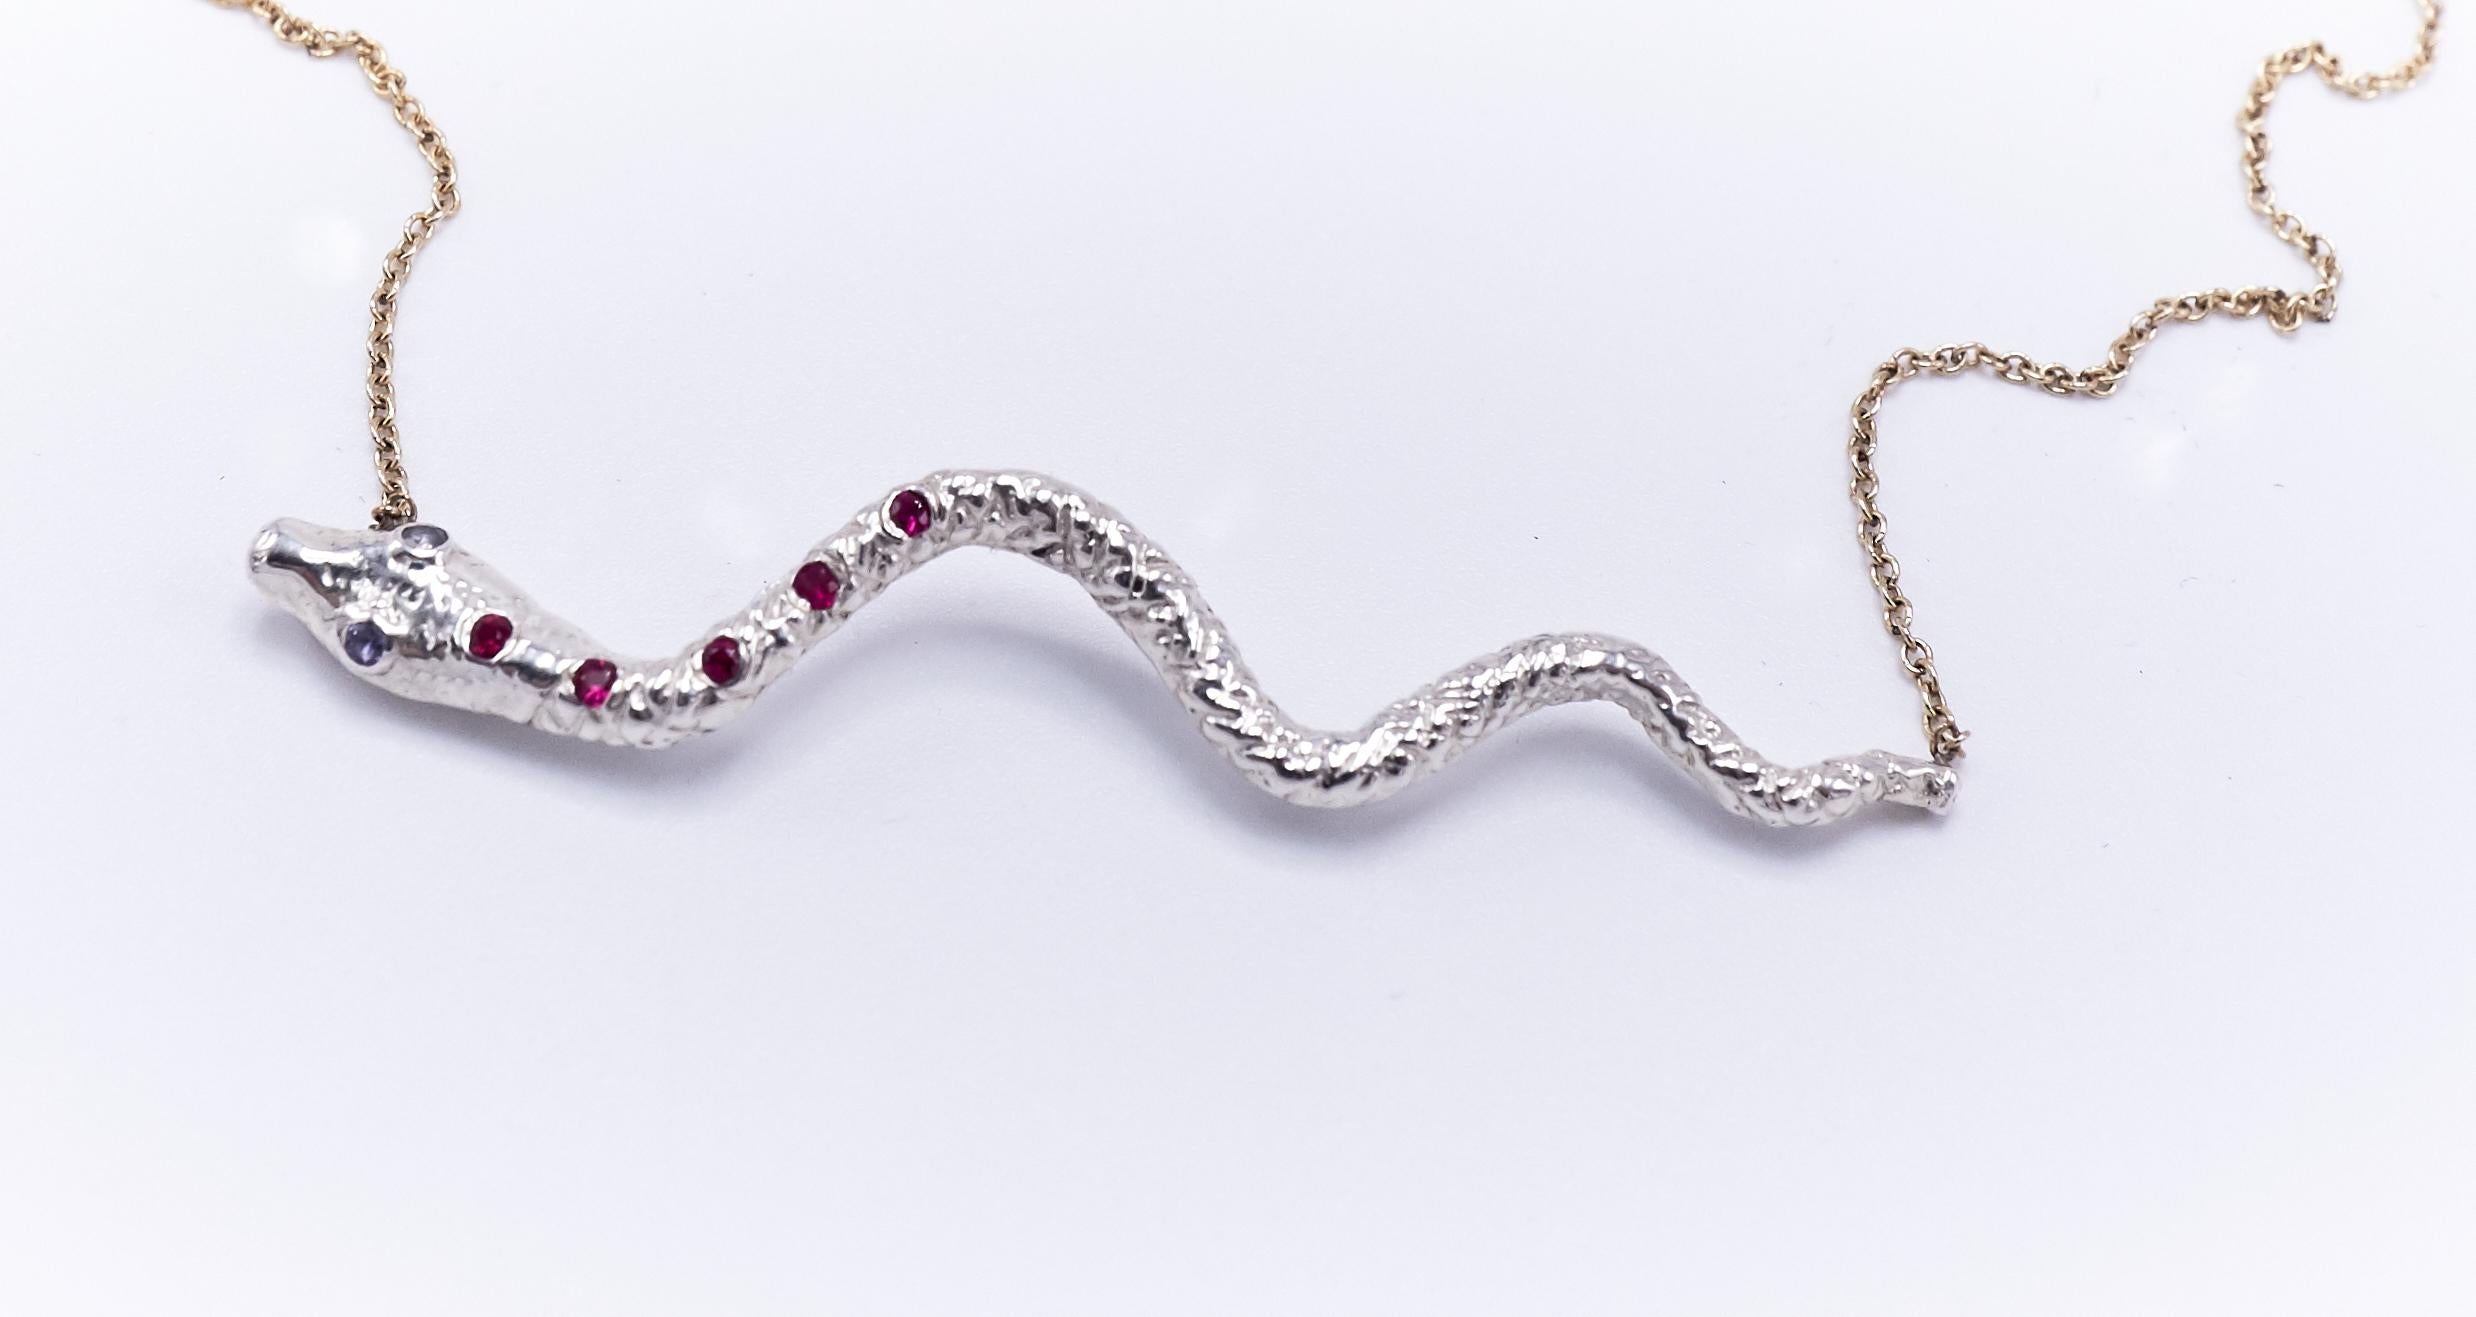 Collier chaîne serpent en argent et or, rubis et iolite 

J. DAUPHIN collier court 